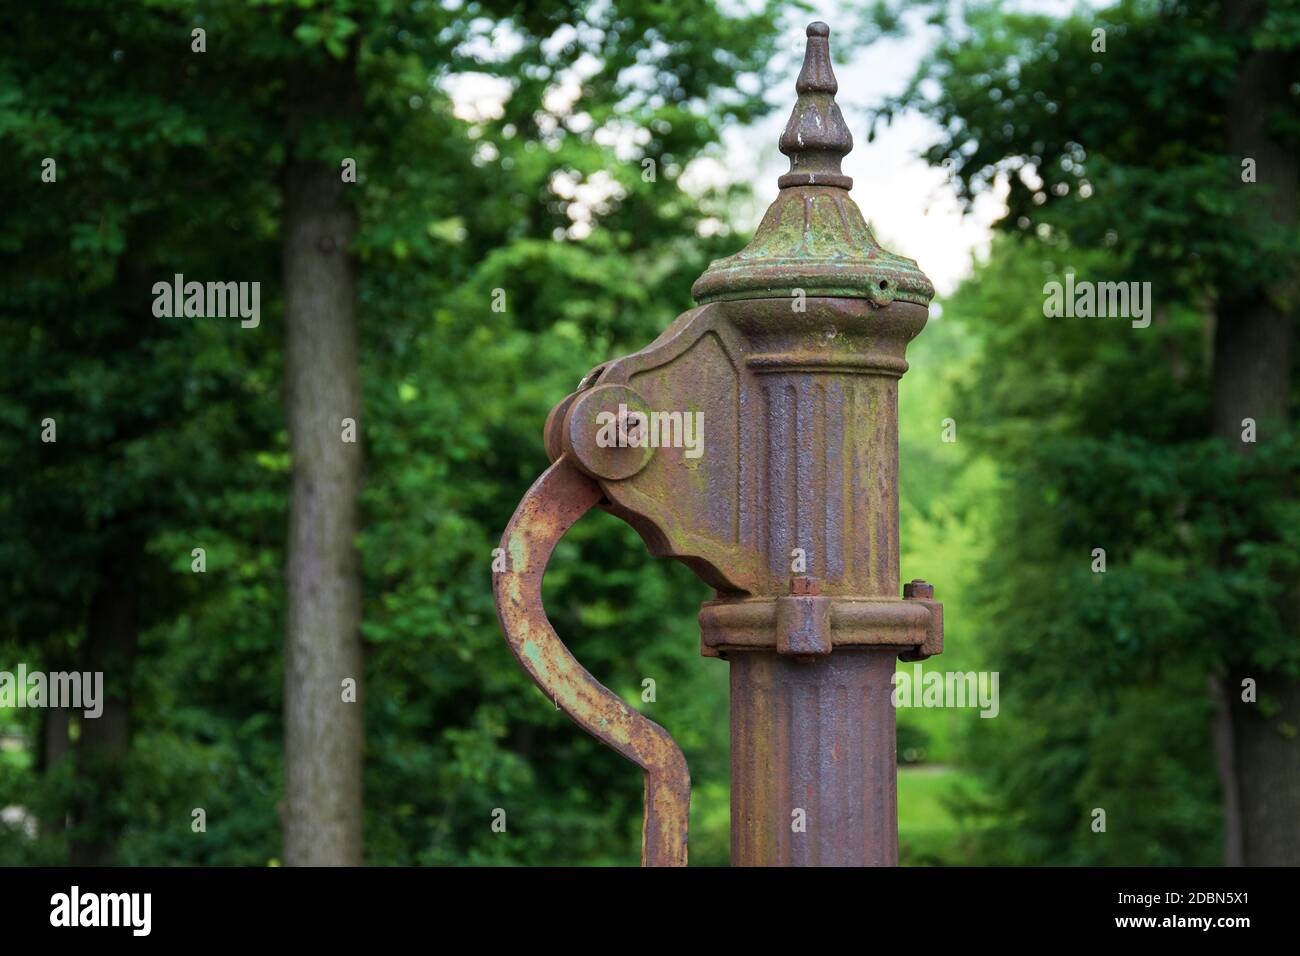 Handwasserpumpe. Alte manuelle Pumpe Brunnen im Park. Foto des alten Stils  gut Objekt. Alte antike Metallmechanik Stockfotografie - Alamy